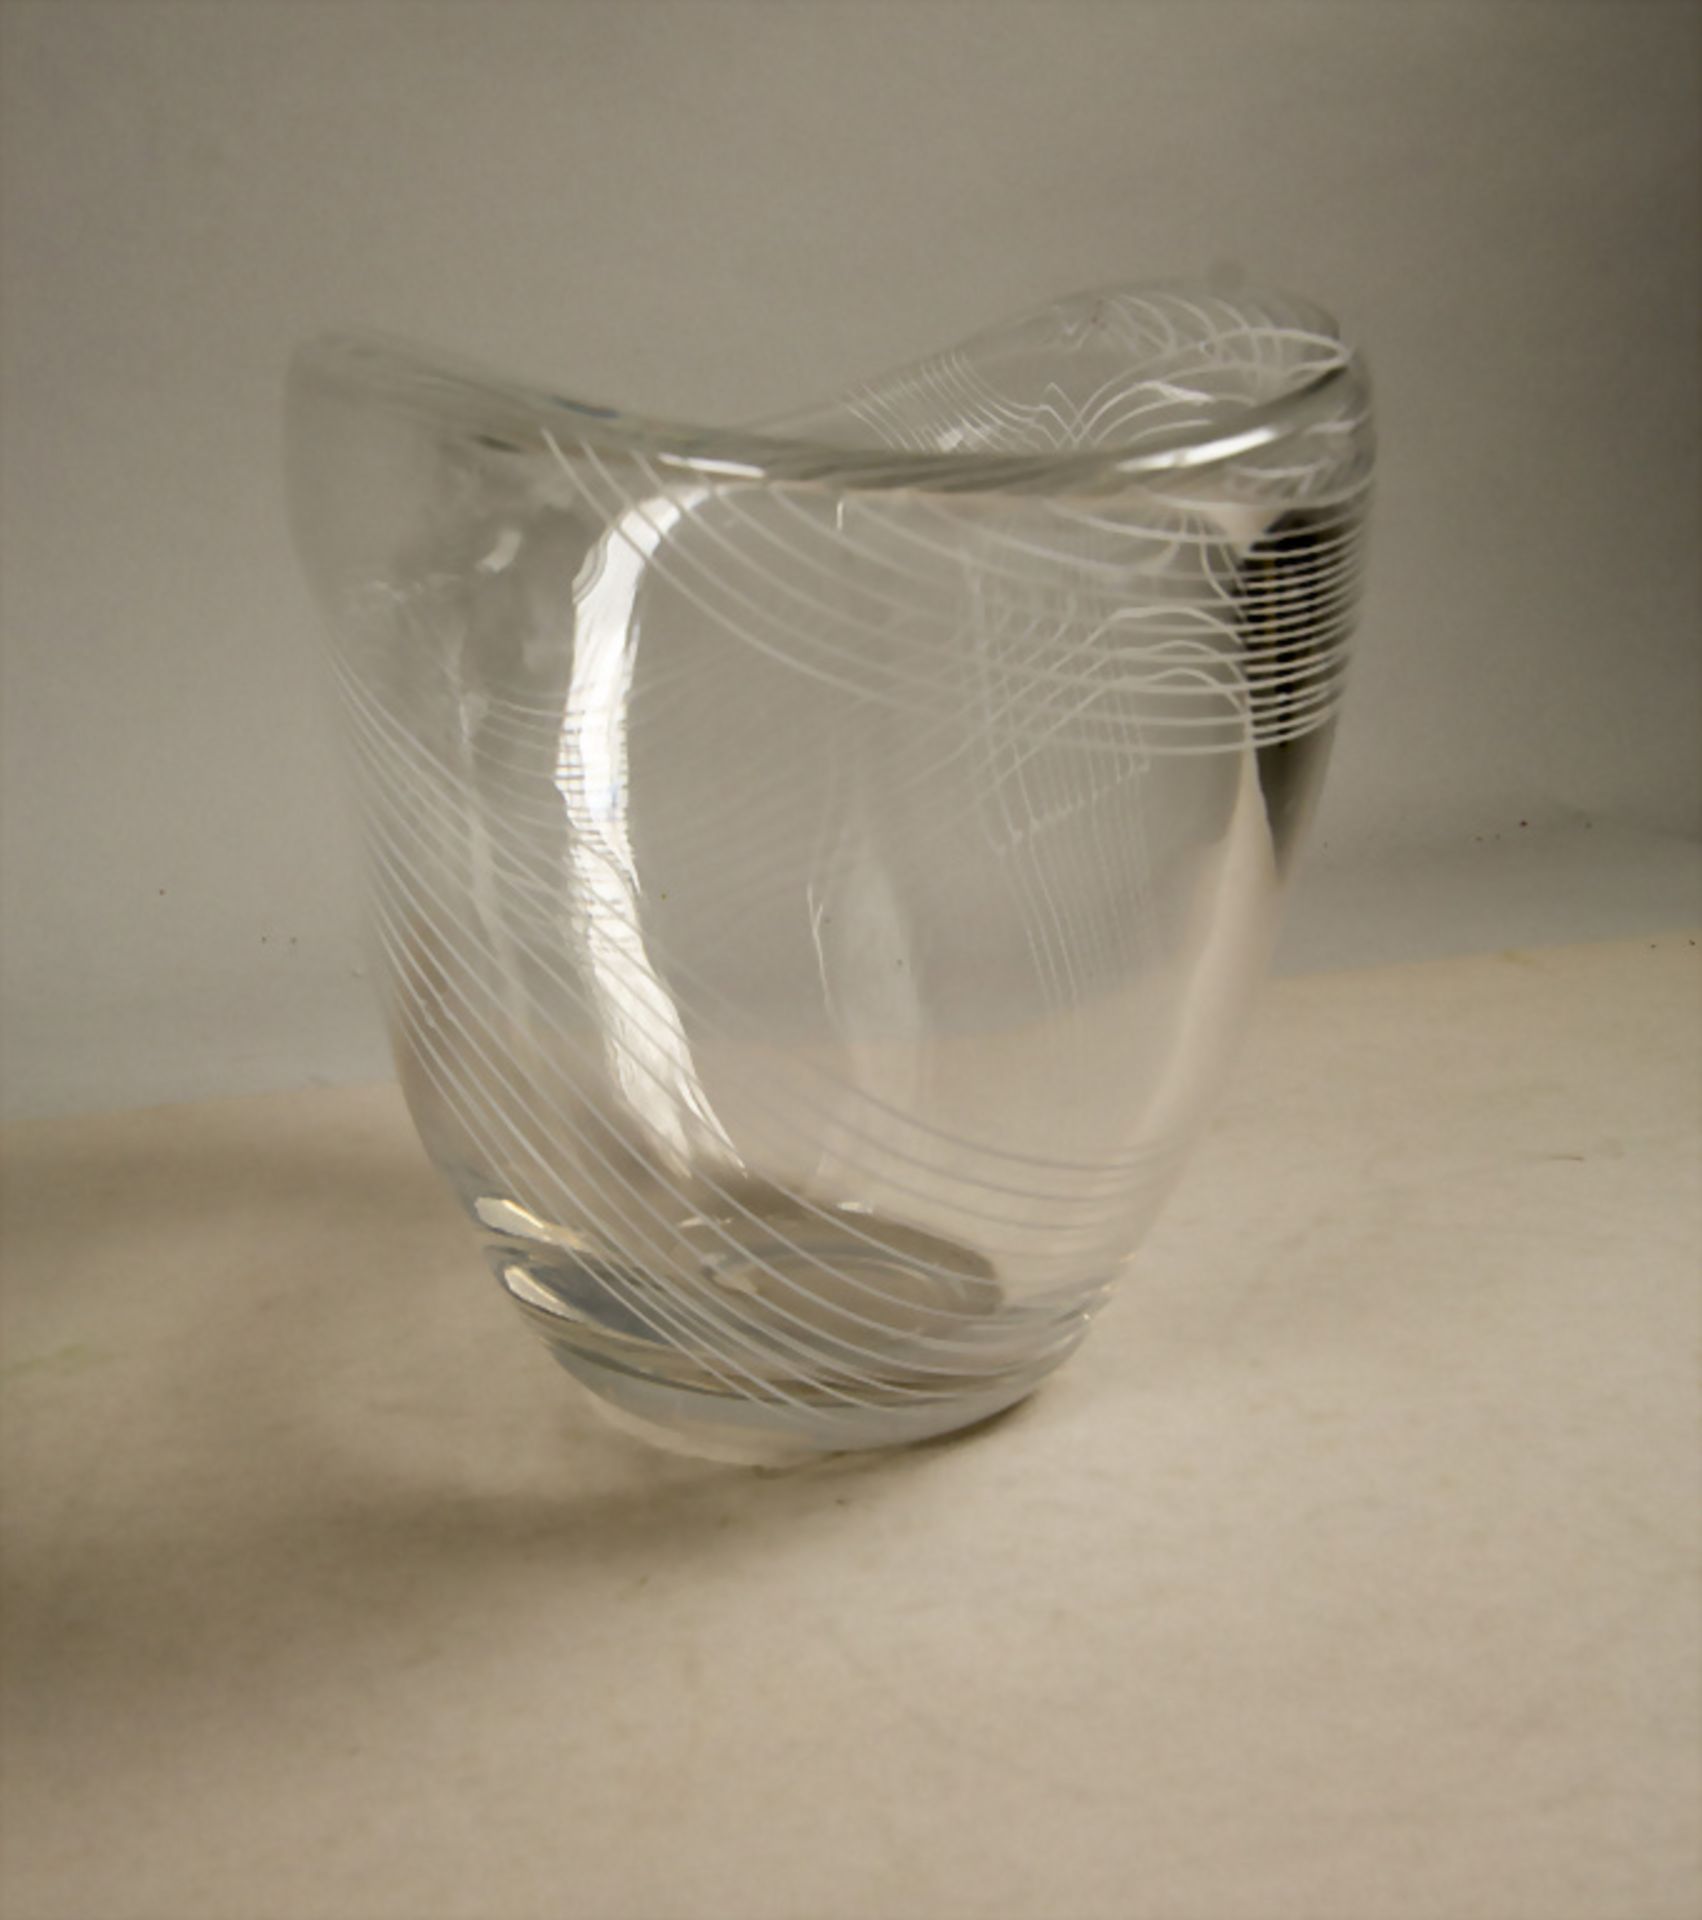 Glaszierschale / A decorative glass bowl, Edvard Halt, Kosta, Schweden, 50er Jahre - Image 3 of 6